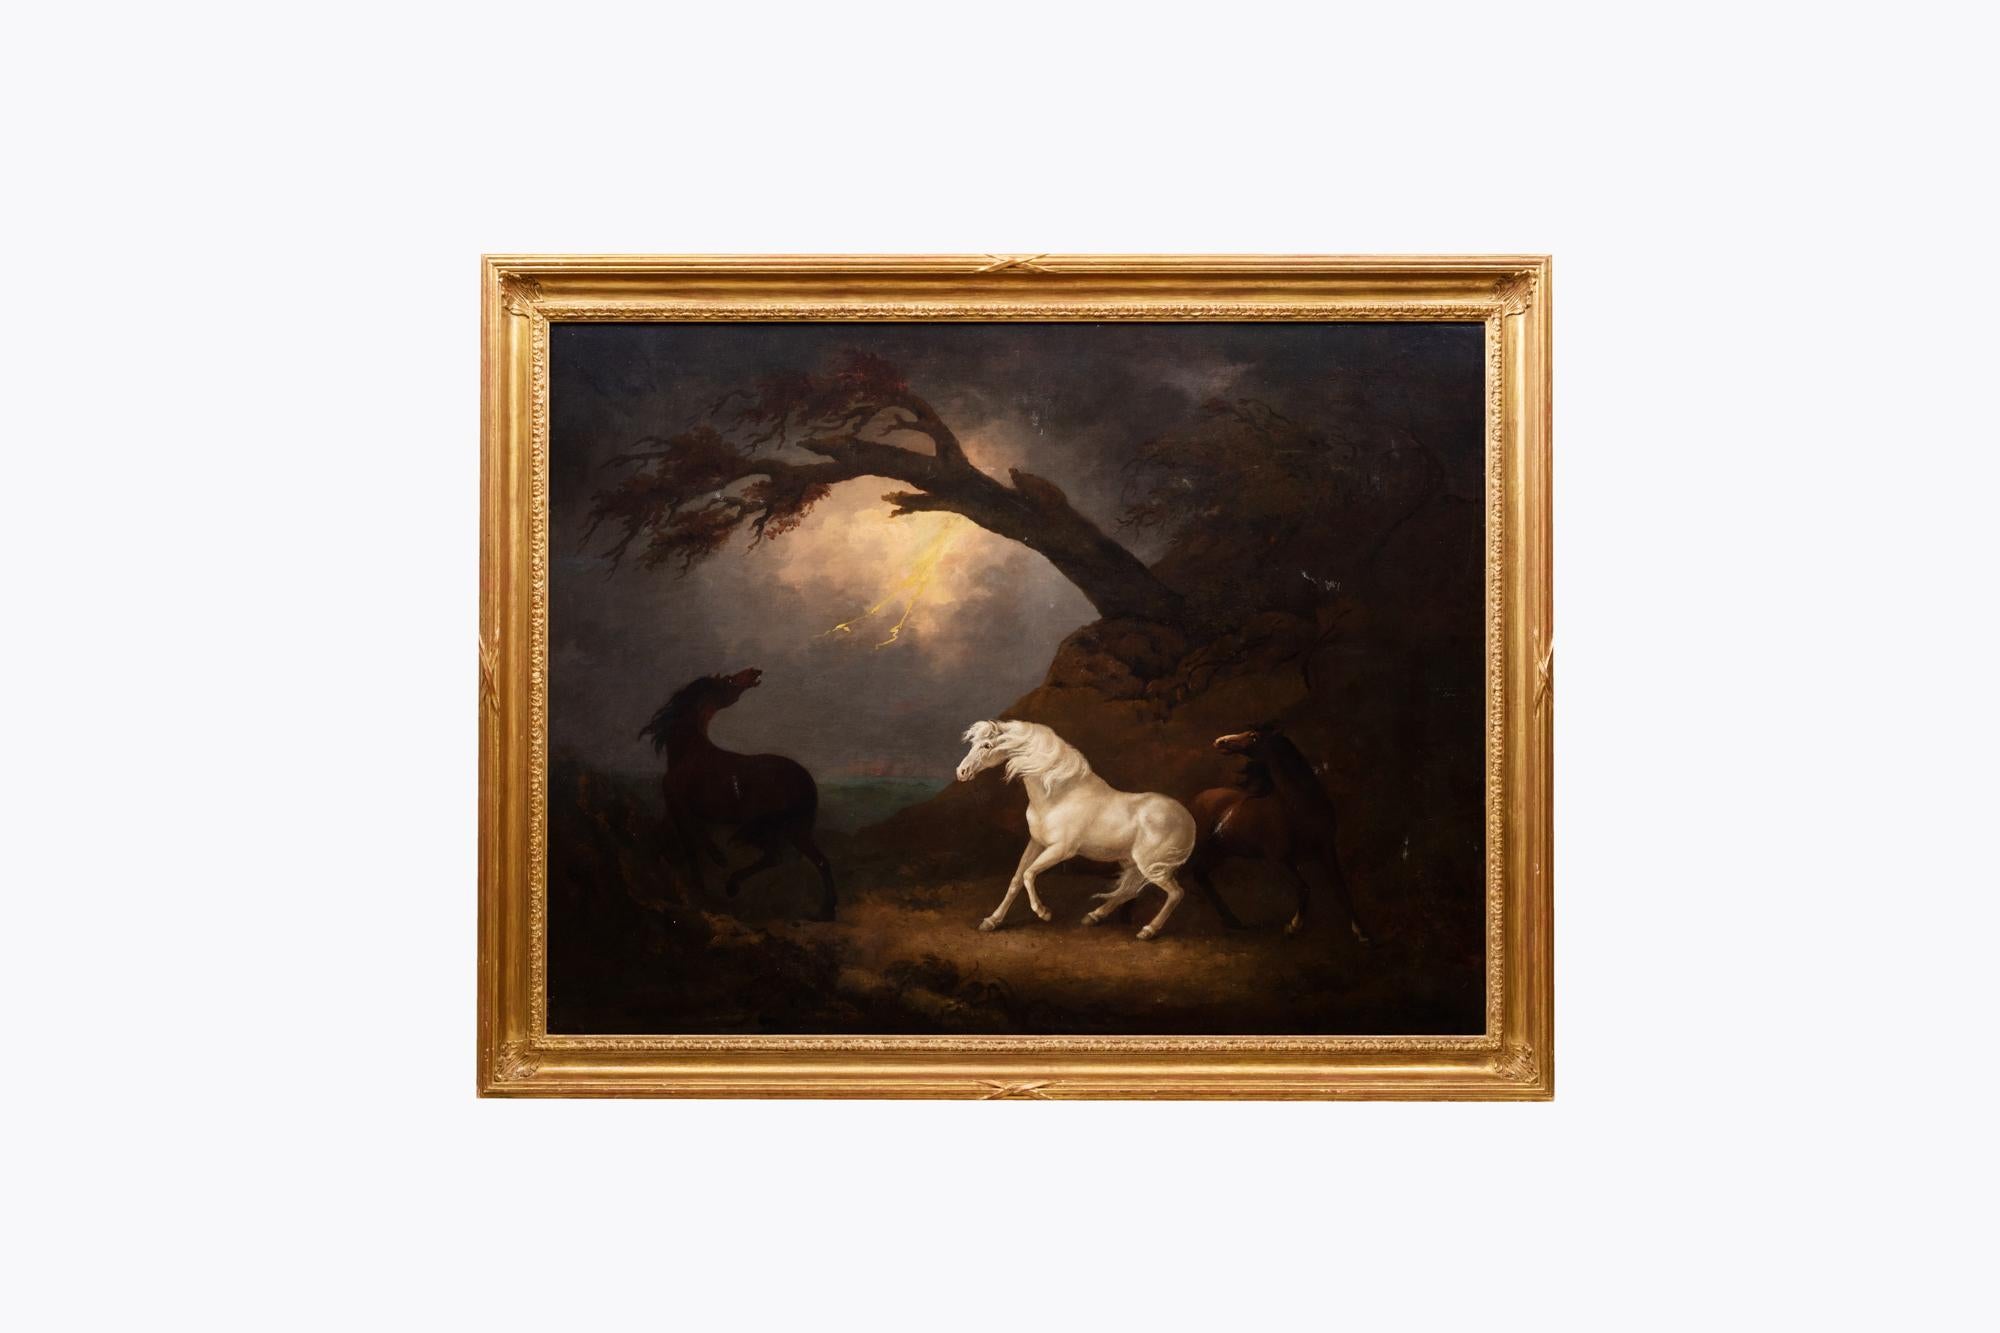 George Armfield (1808-1893) Ölgemälde auf Leinwand, das eine stimmungsvolle Szene mit drei Pferden im Vordergrund und einem Gewitter im Hintergrund zeigt. Die dramatische Spannung wird durch das Spiel von Licht und Schatten erzeugt und durch den